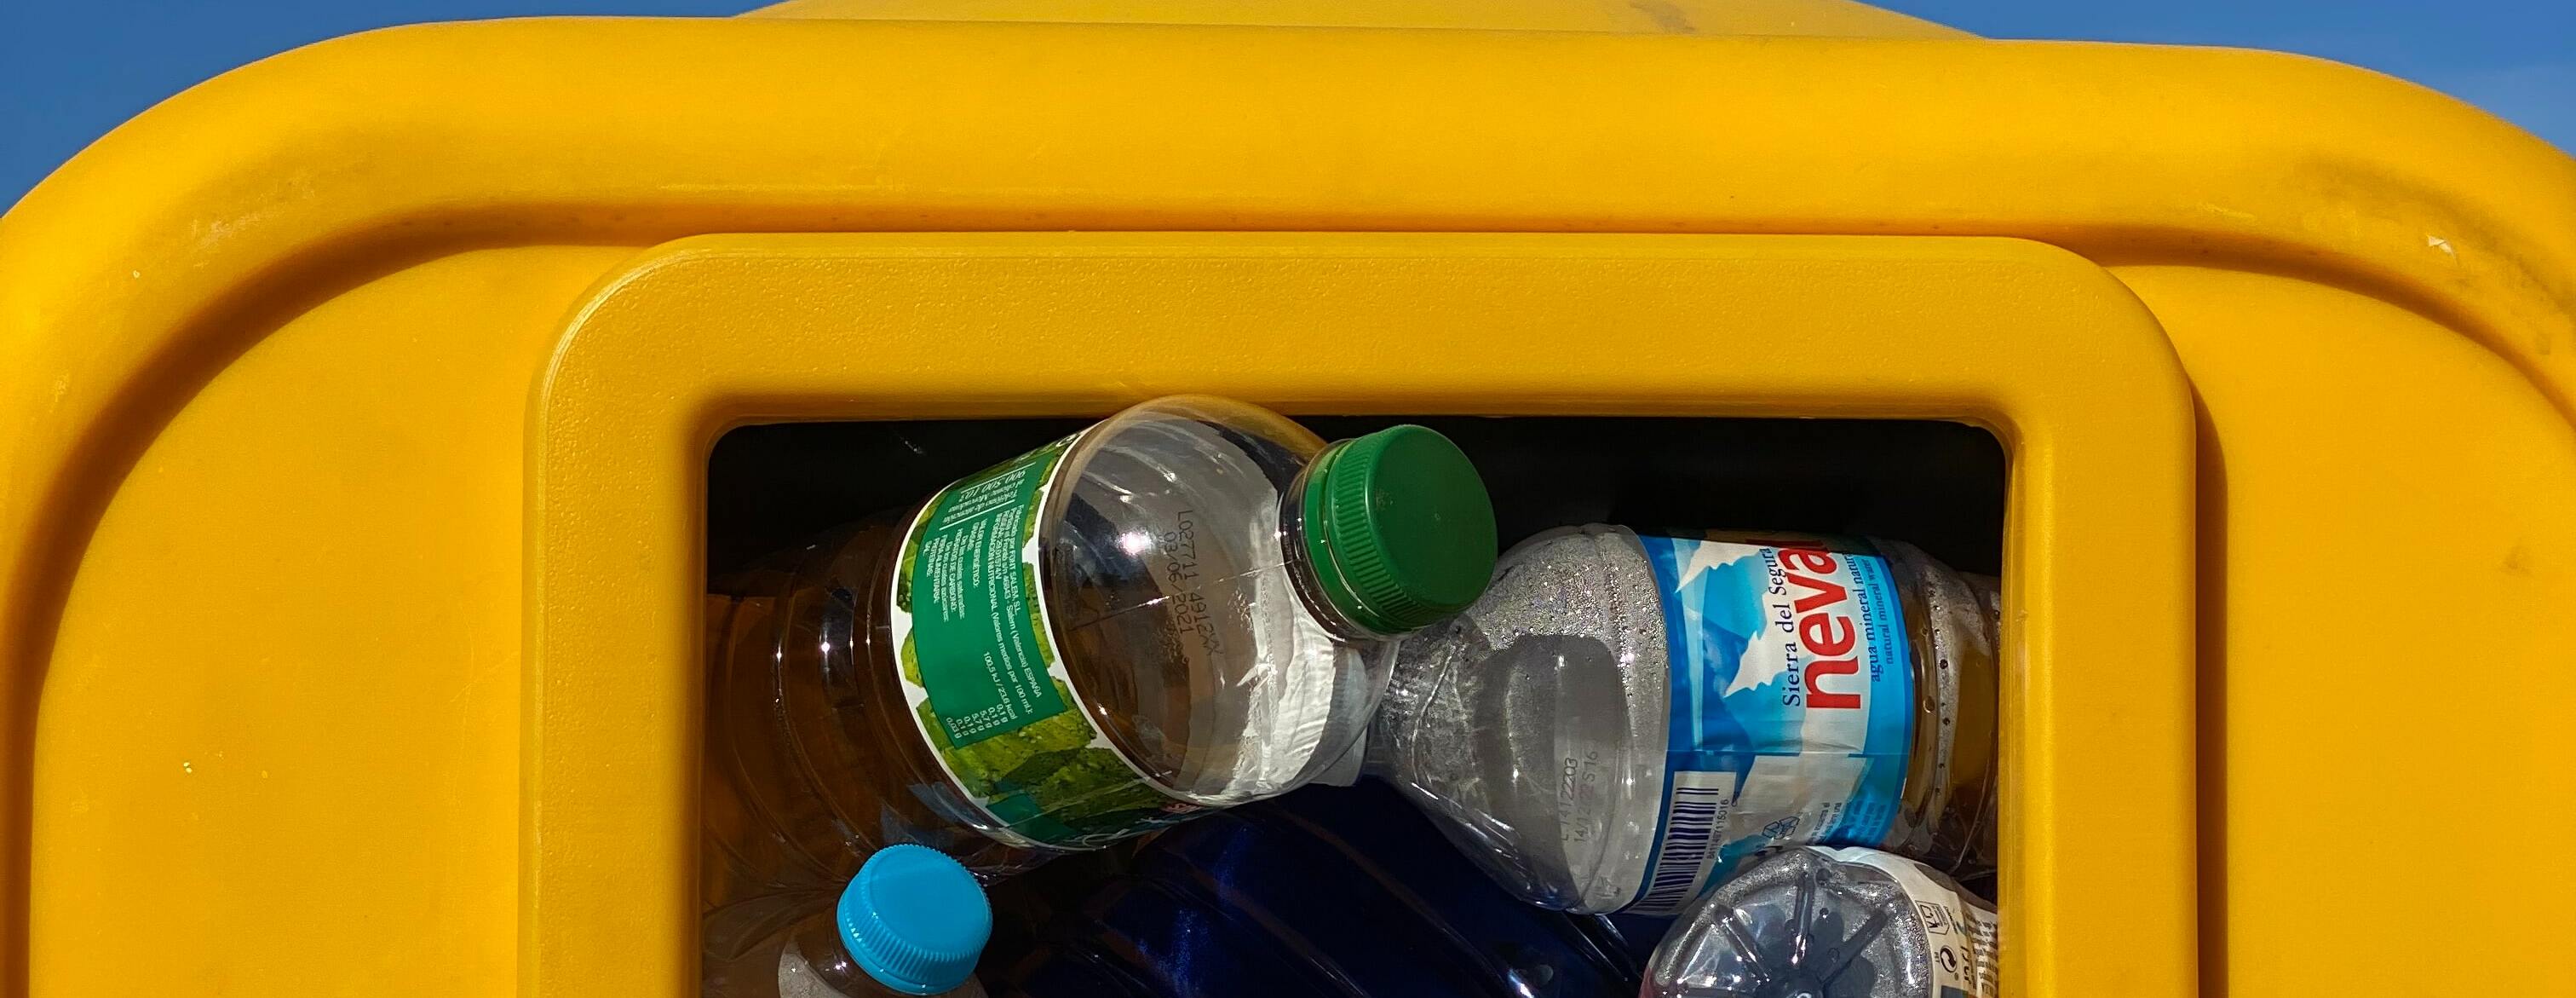 «Малый бизнес не должен пострадать»: эксперт одобрил запрет 28 видов товаров из пластика